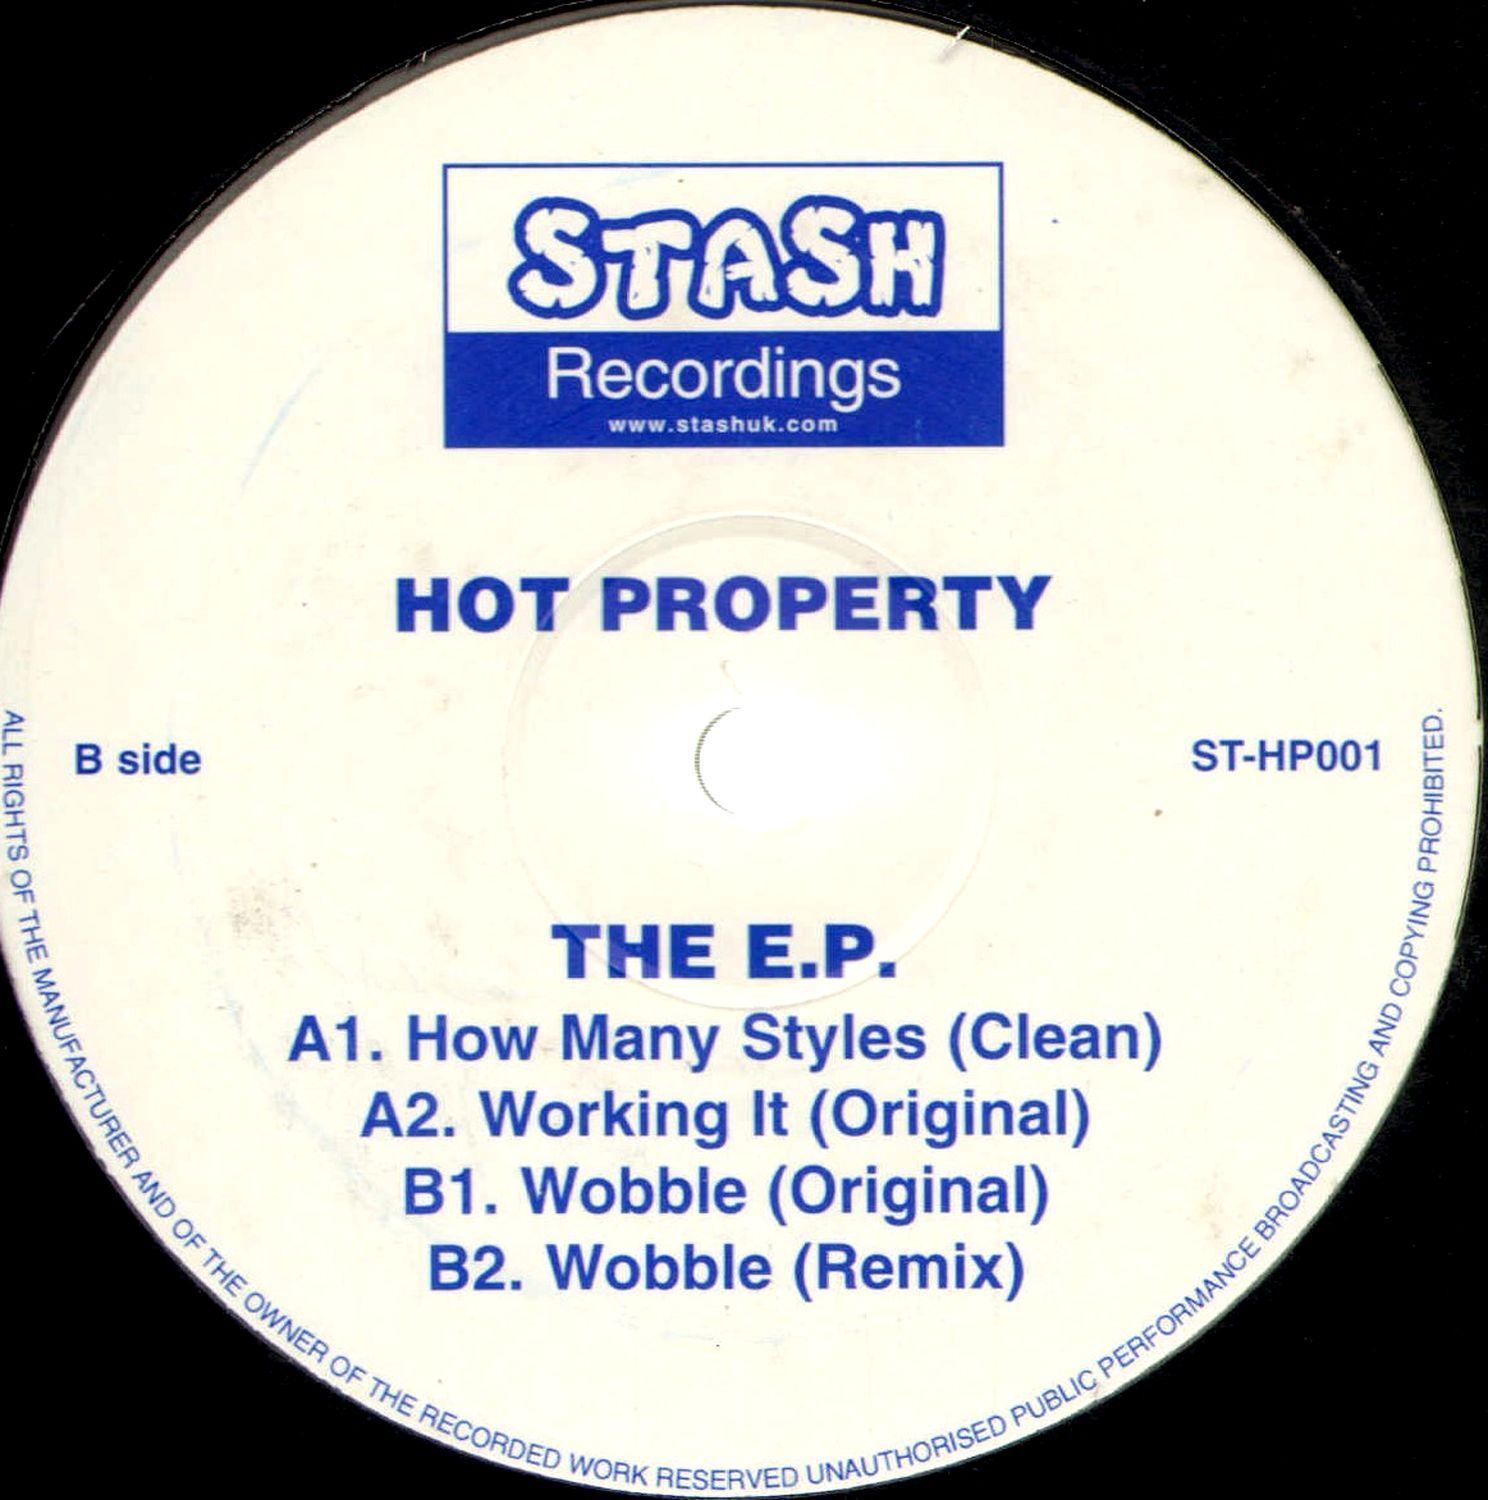 HOT PROPERTY the e.p. (UK Original) 12" EX ST-HP001 Garage Hip-Hop RnB 2002